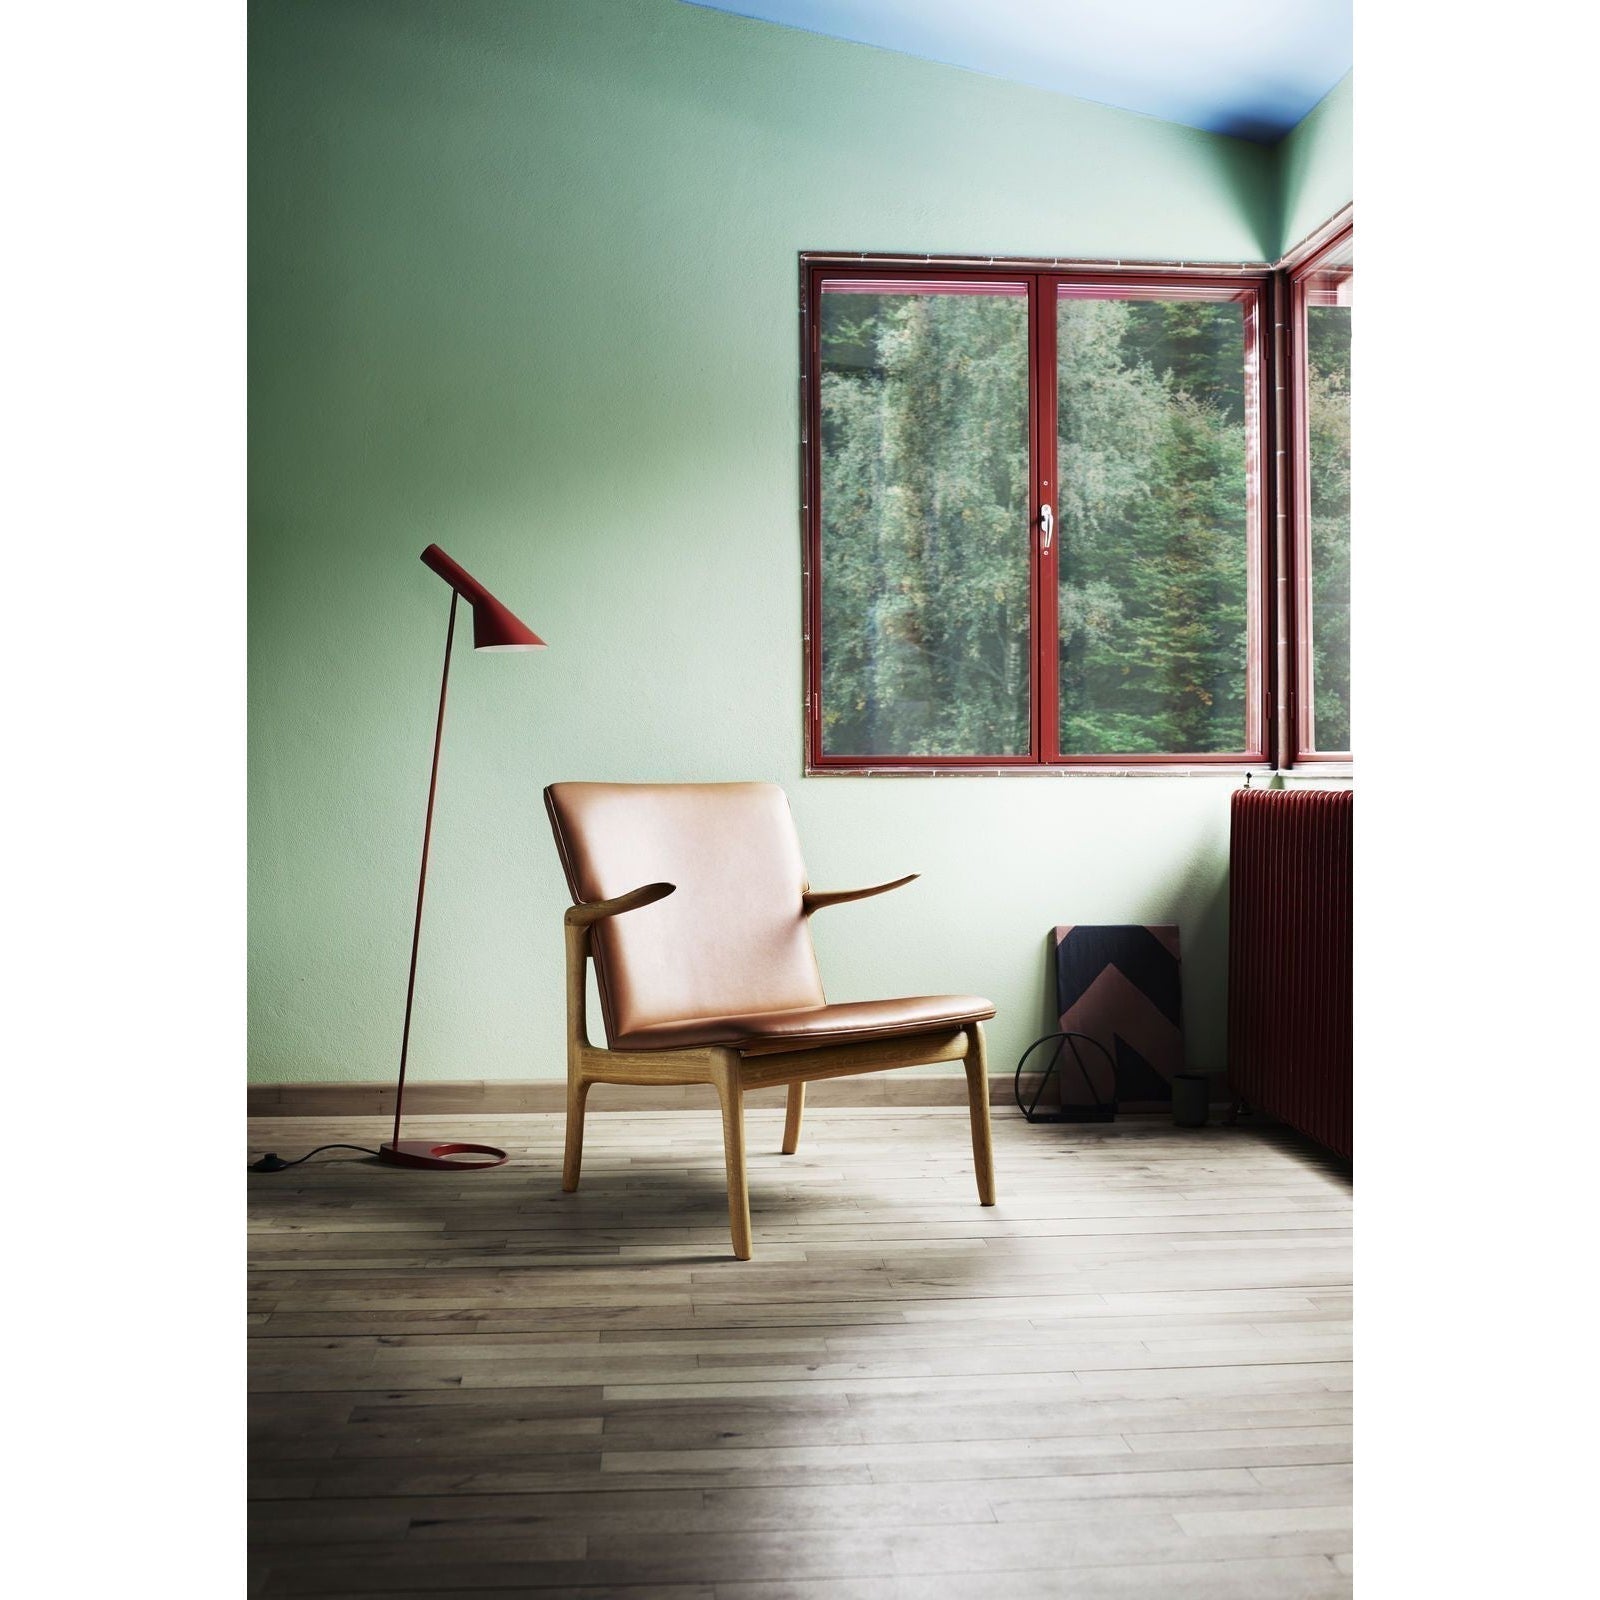 Klaveá židle Carl Hansen Ow124, naolejovaná dubová/hnědá kůže